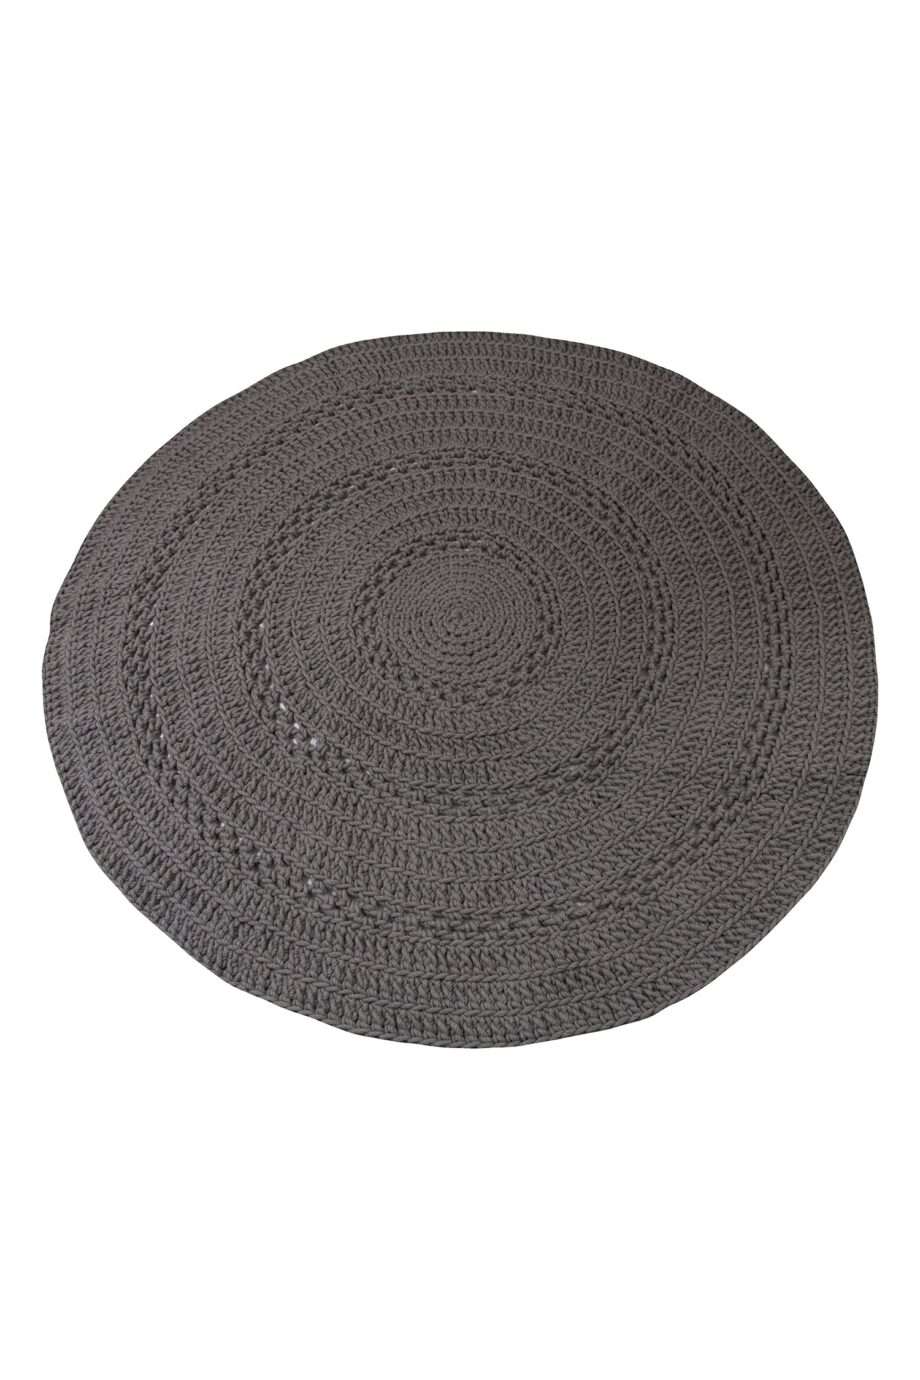 peony grey crochet woolen rug xlarge